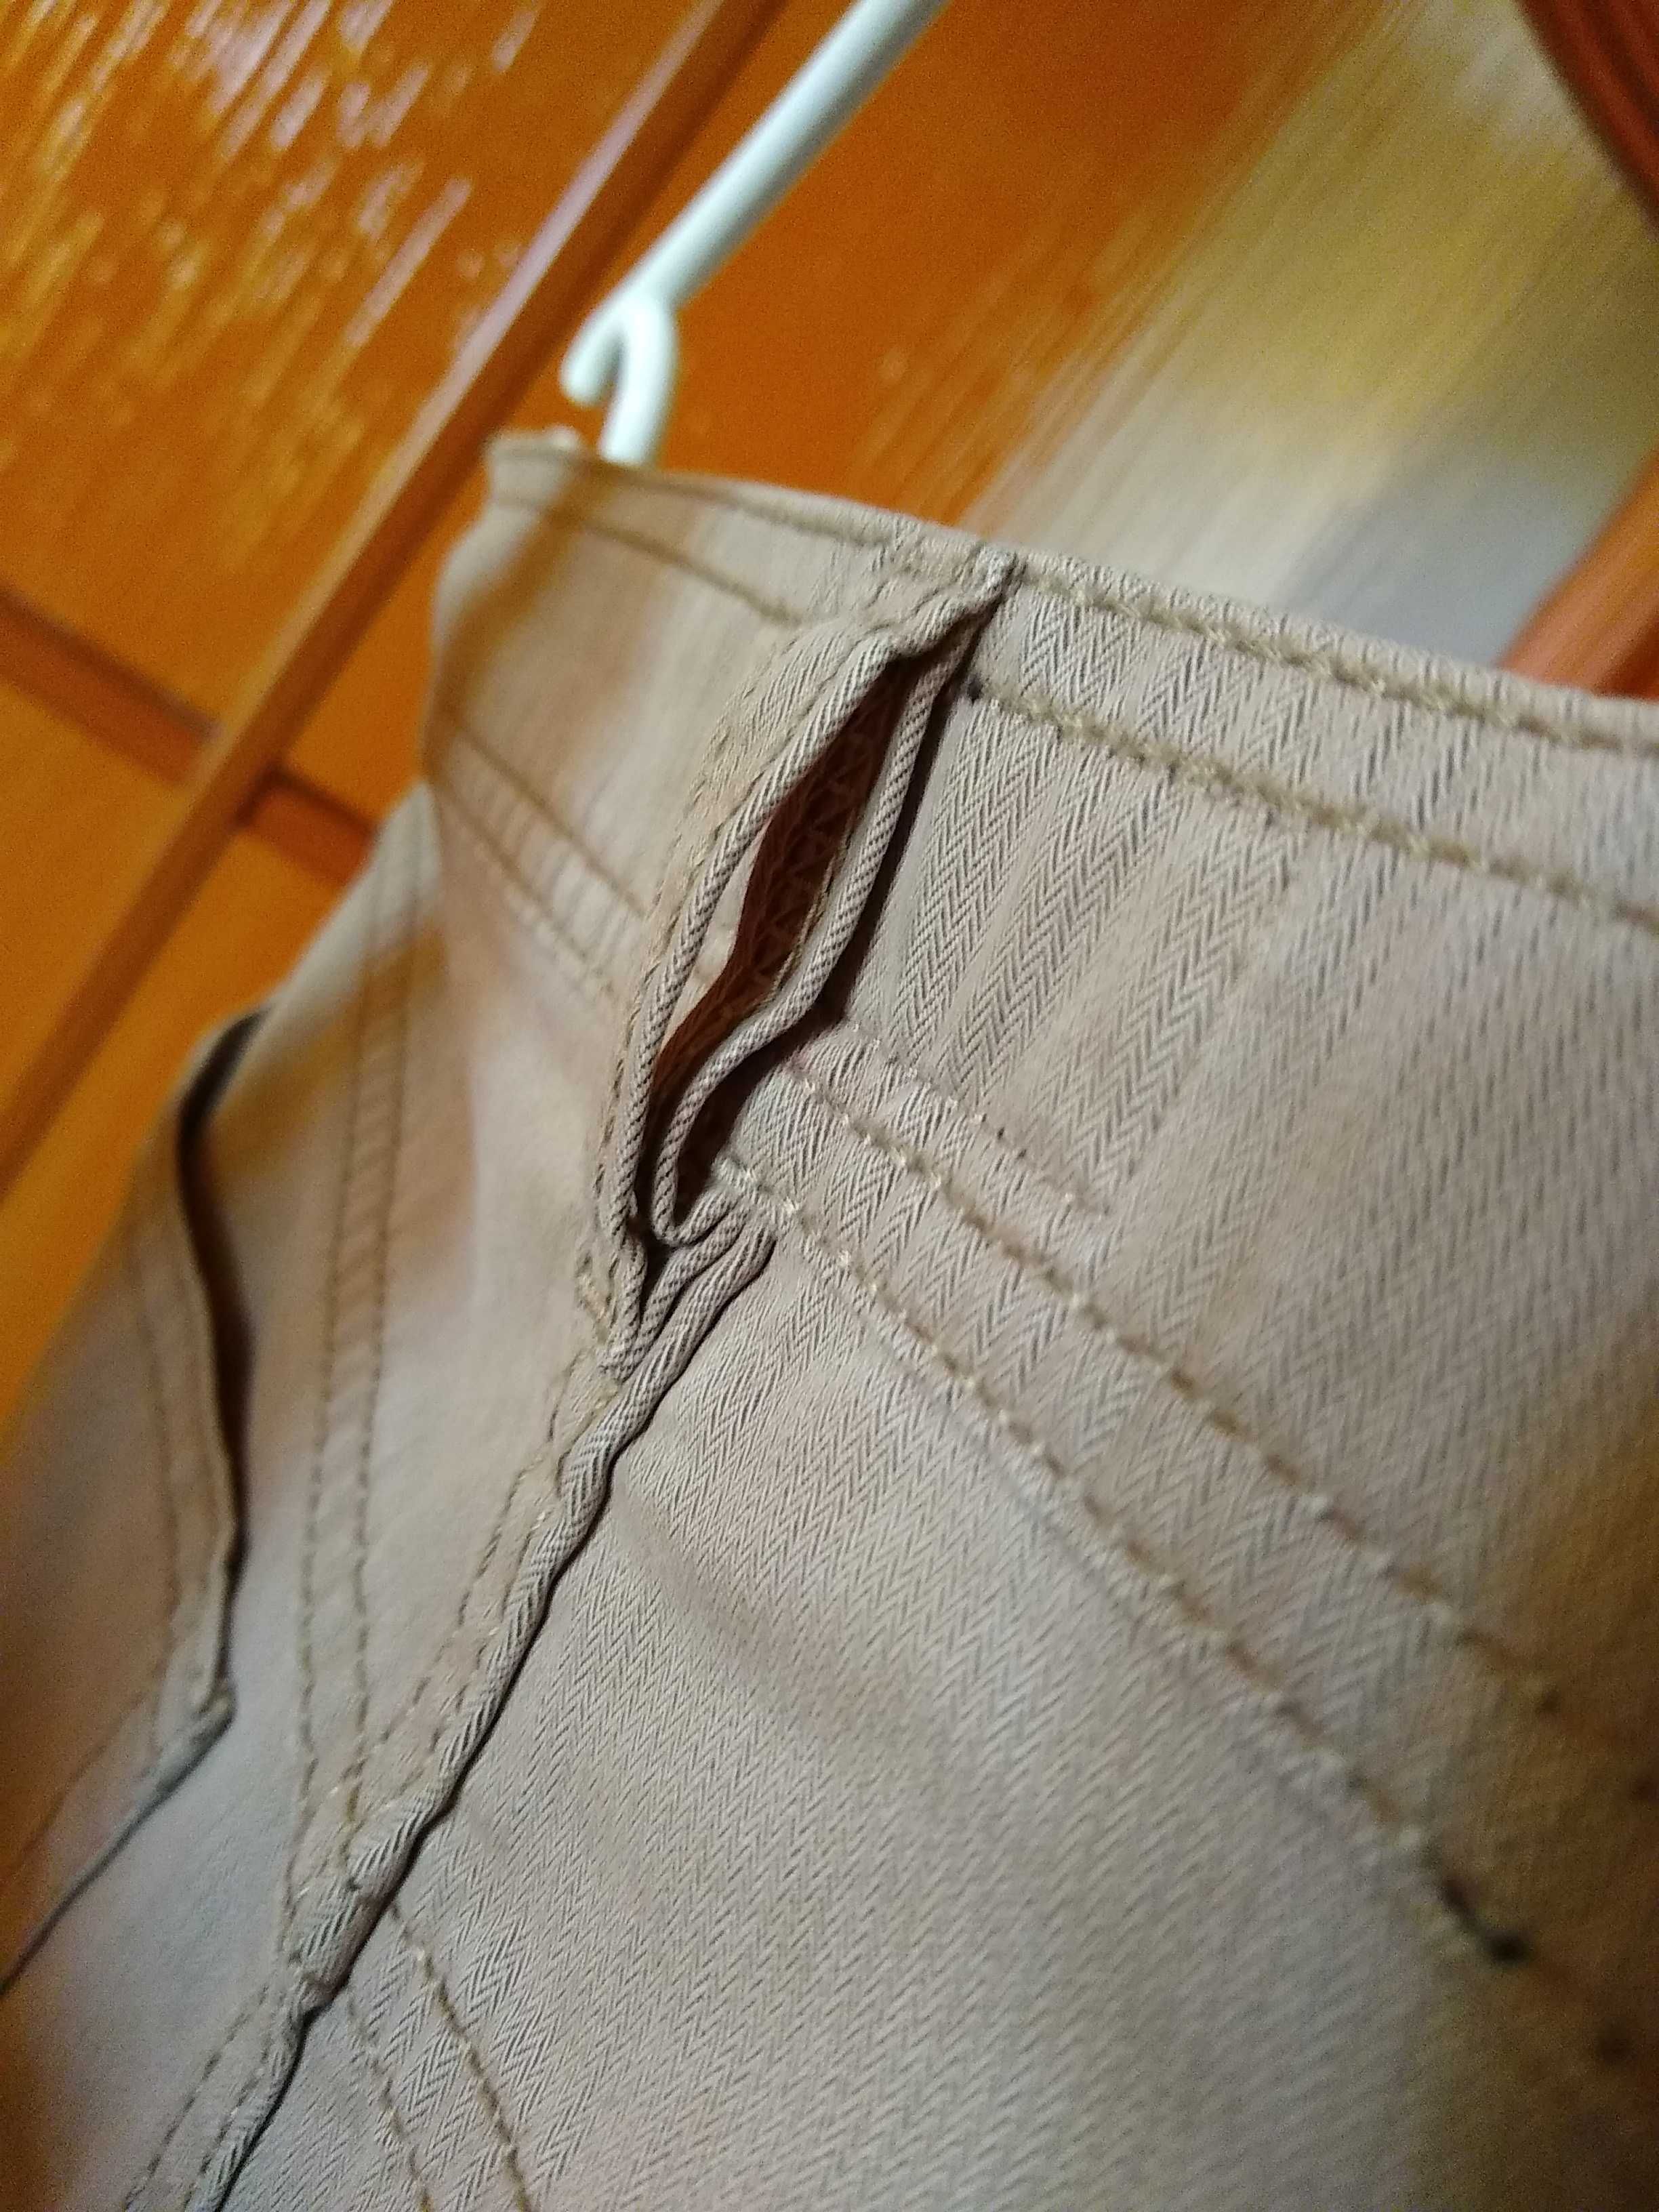 BRAX  Męskie spodnie, 100% Bawełna, Roz. M, Pas 84 cm, Dł. 103 cm